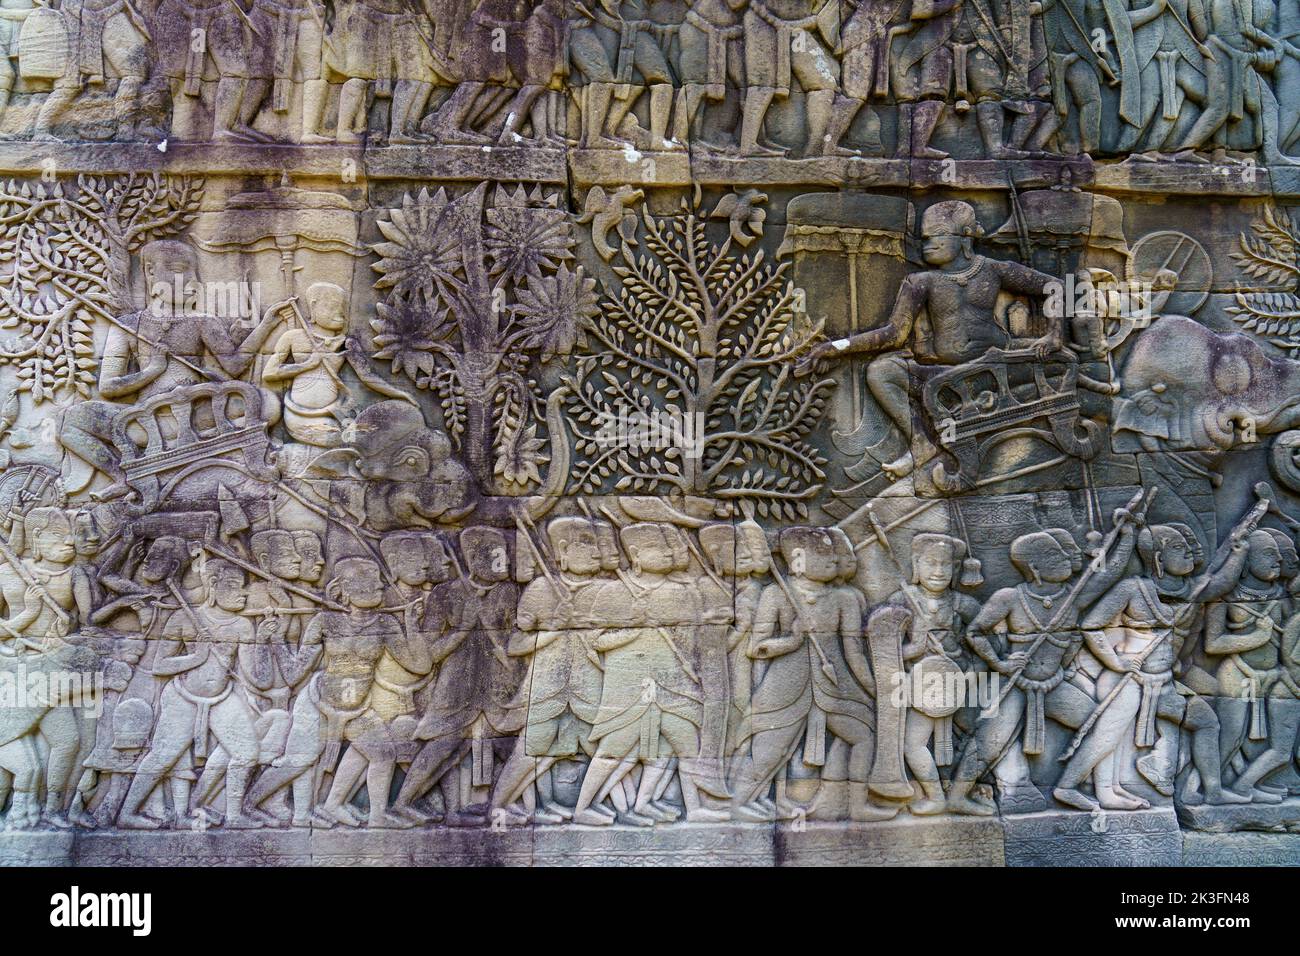 Camboya. Siem Riep. El parque arqueológico de Angkor. Un bajorrelieve en el templo hindú del siglo 12th de Bayon Foto de stock